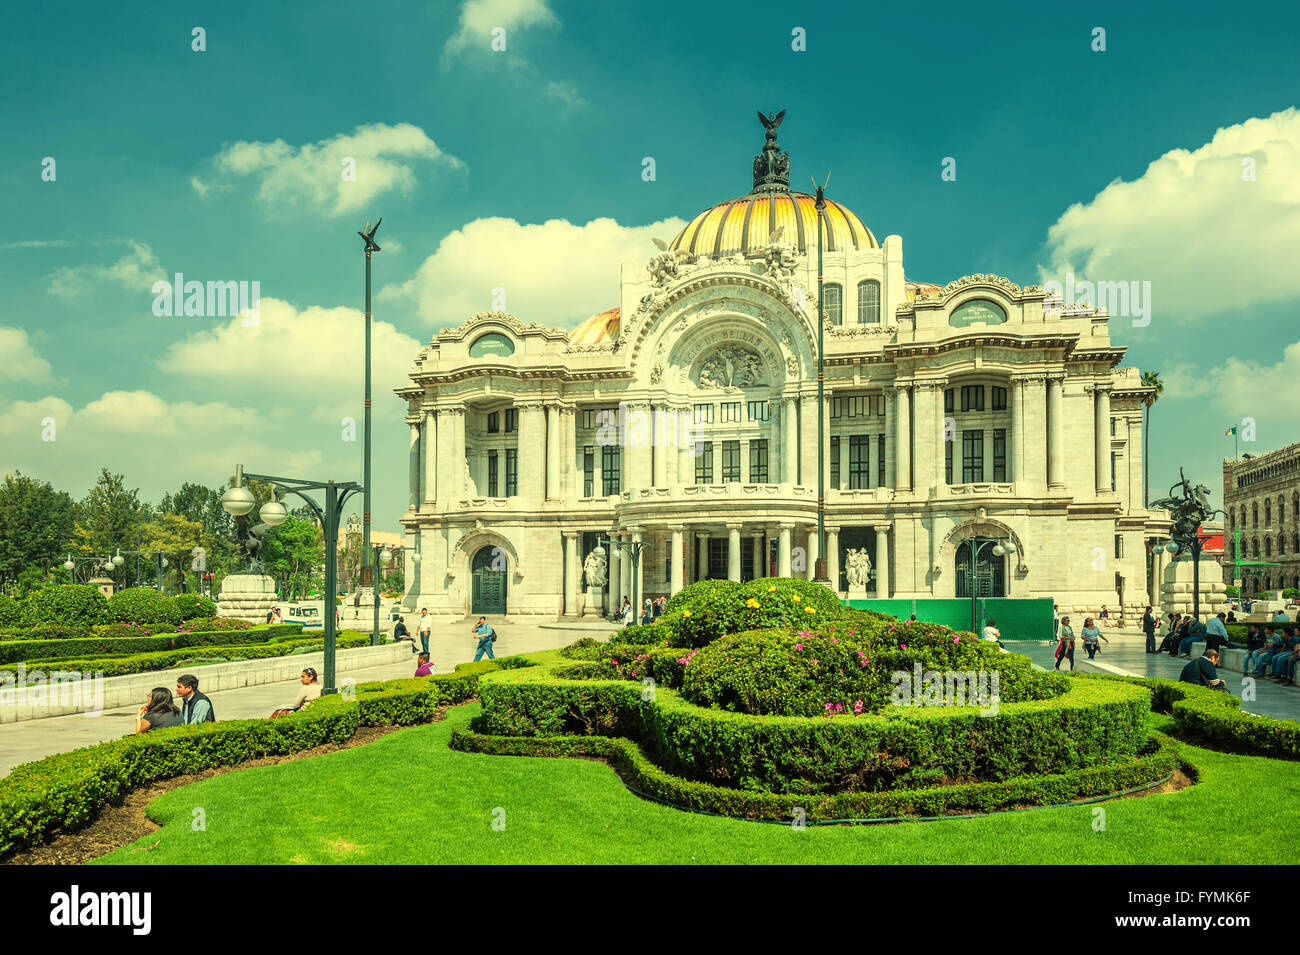 Retro style image of Palacio de Bellas Artes, Mexico city Stock Photo